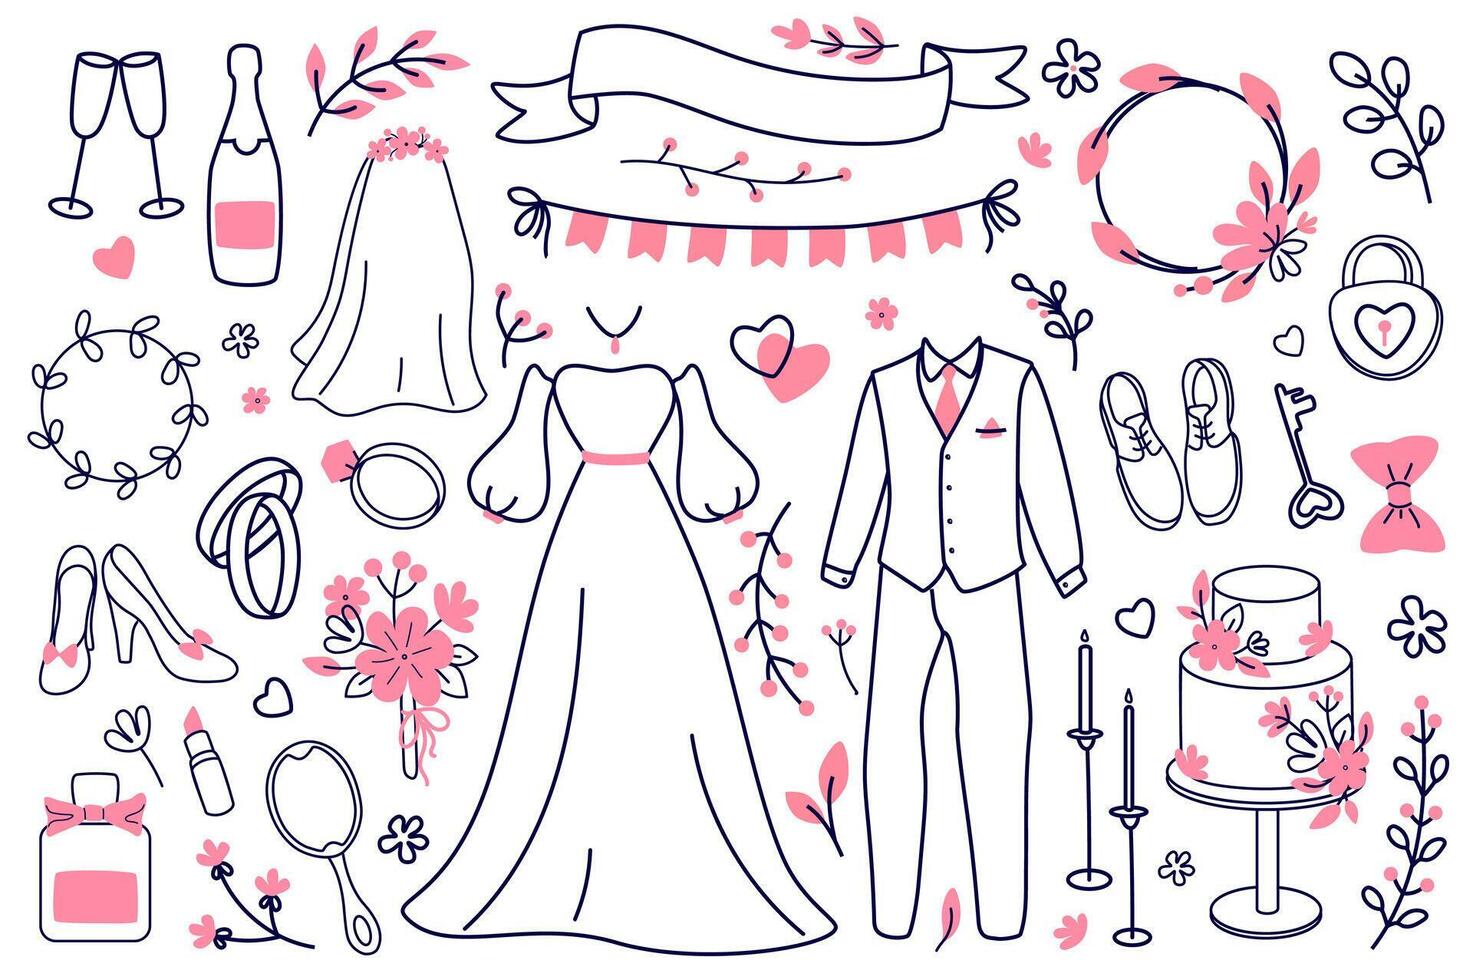 bruiloft schets voorwerpen mega reeks in grafisch vlak ontwerp. bundel elementen van bruid jurk, bruidegom pak, bloemen, Champagne, bril, ringen, taart, andere lijn tekens. vector illustratie geïsoleerd stickers